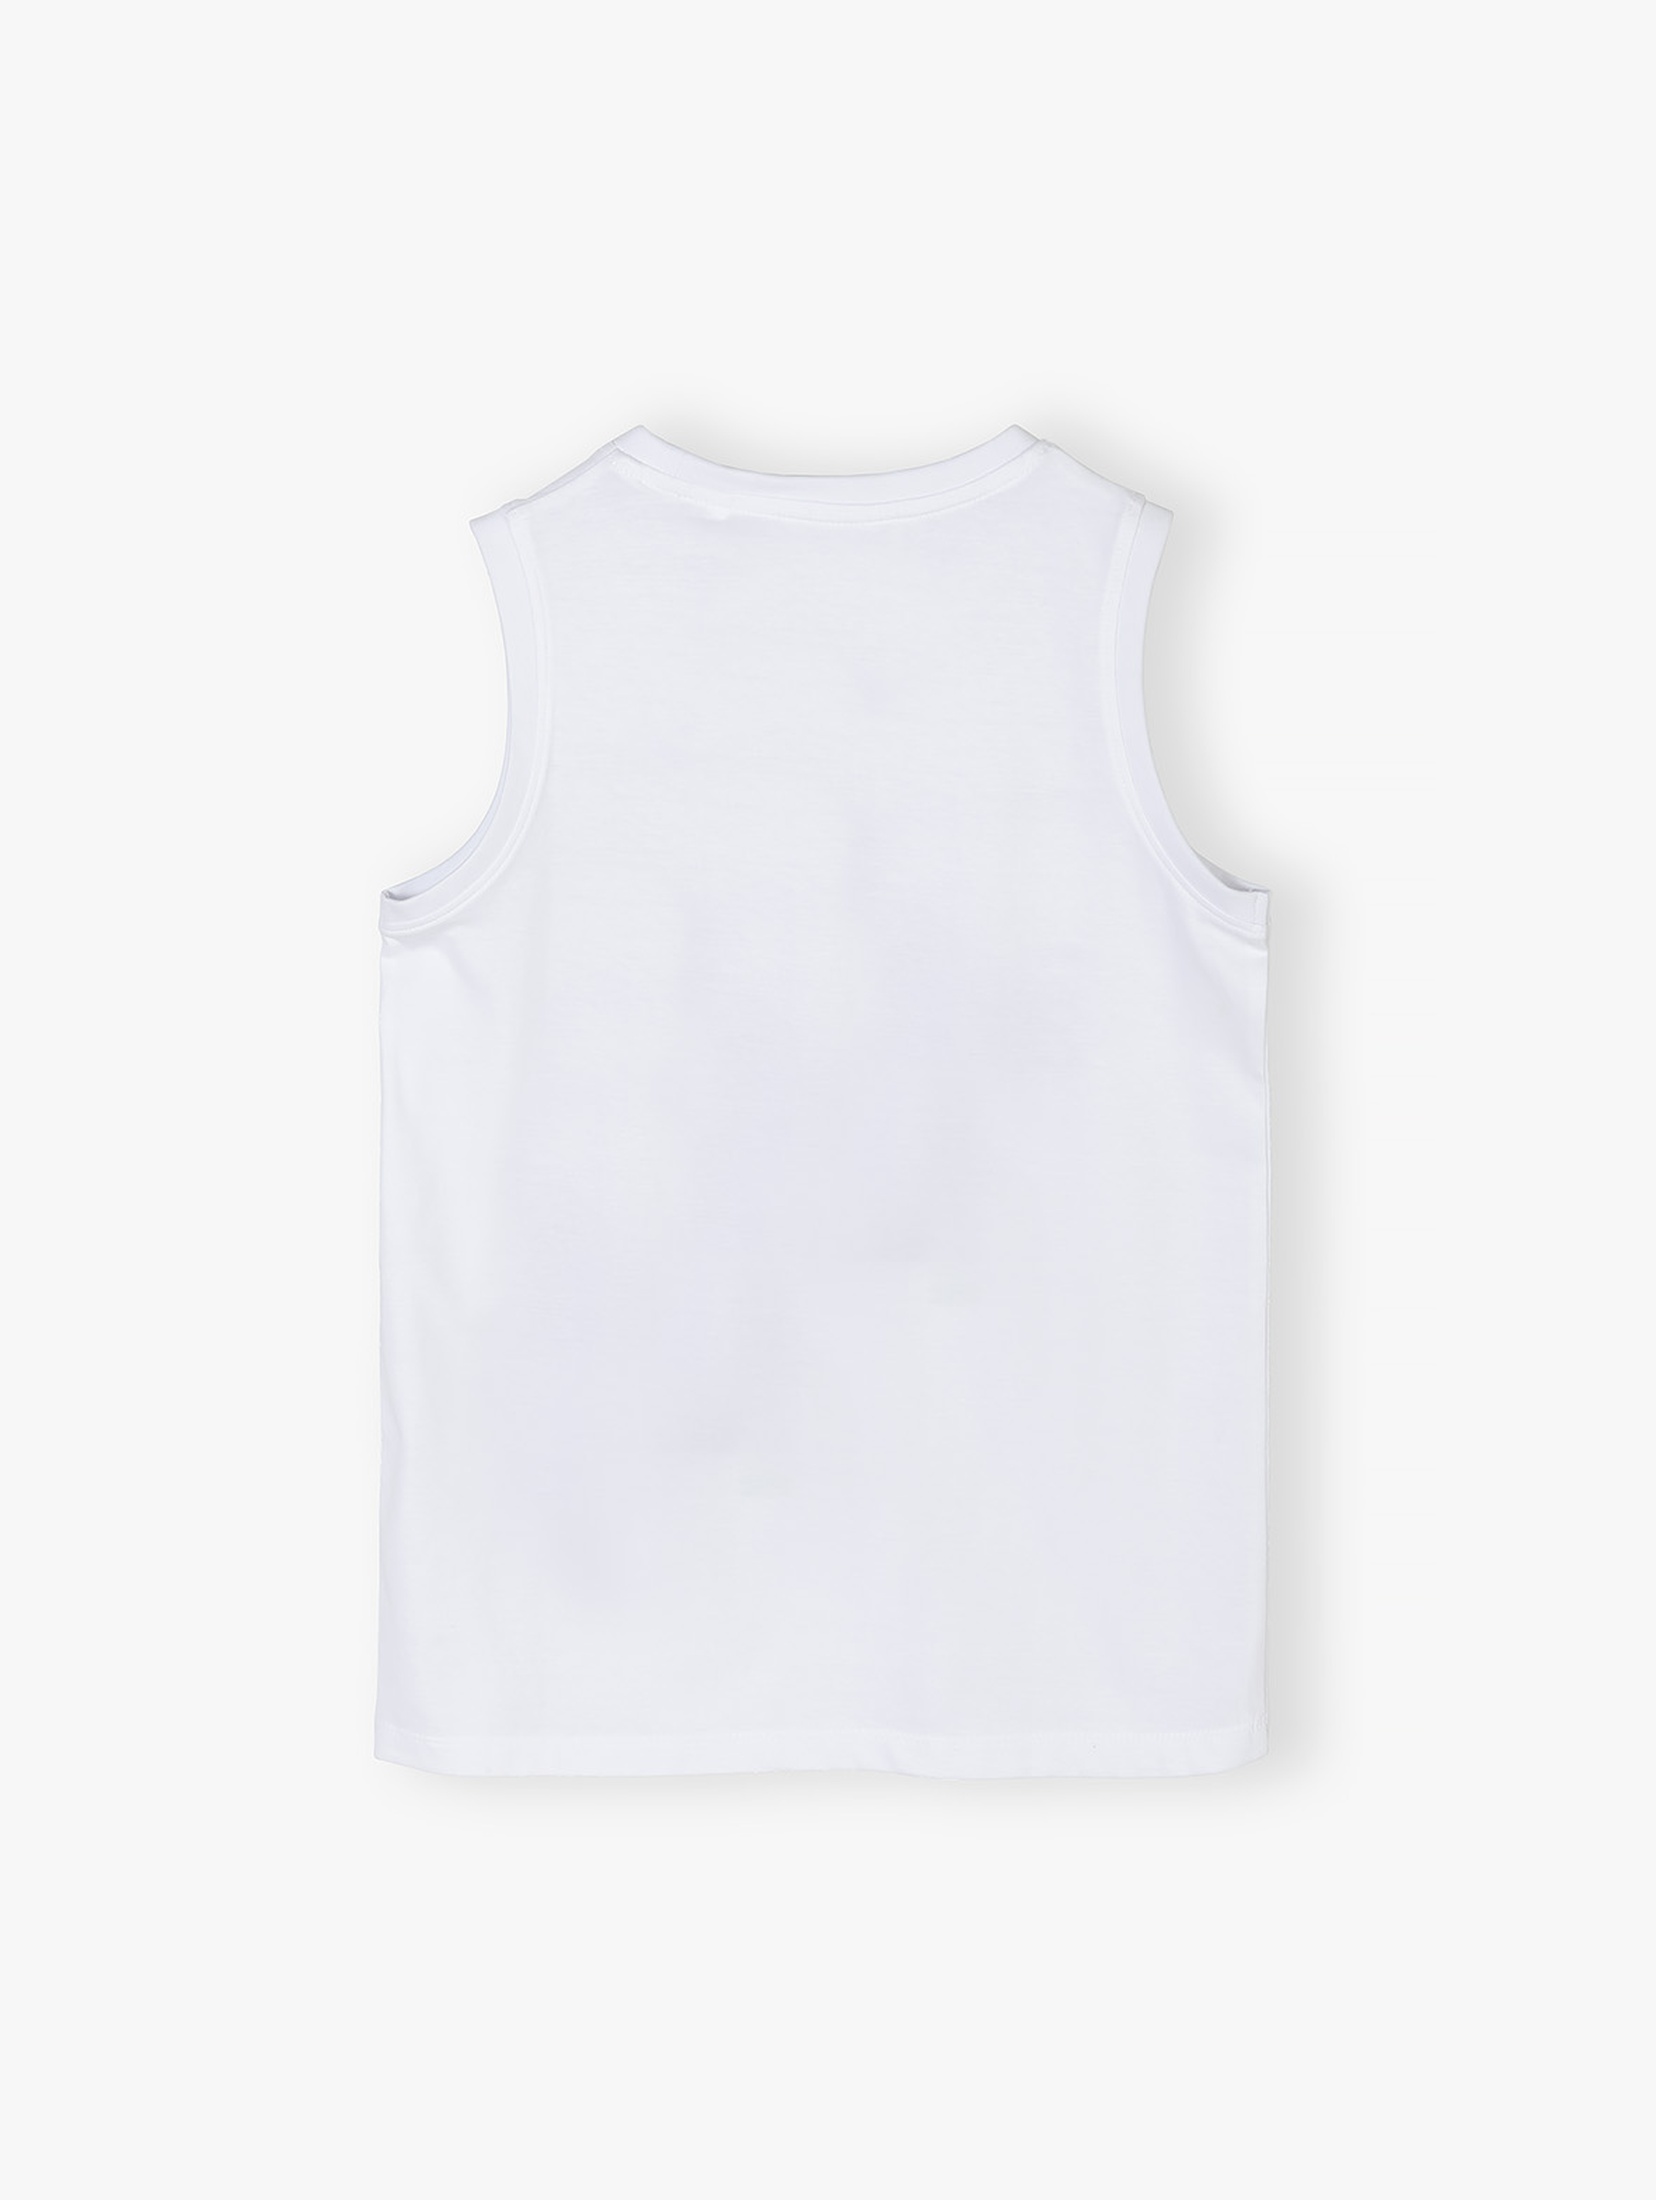 Biała koszulka chłopięca bez rękawów bawełniana z nadrukiem